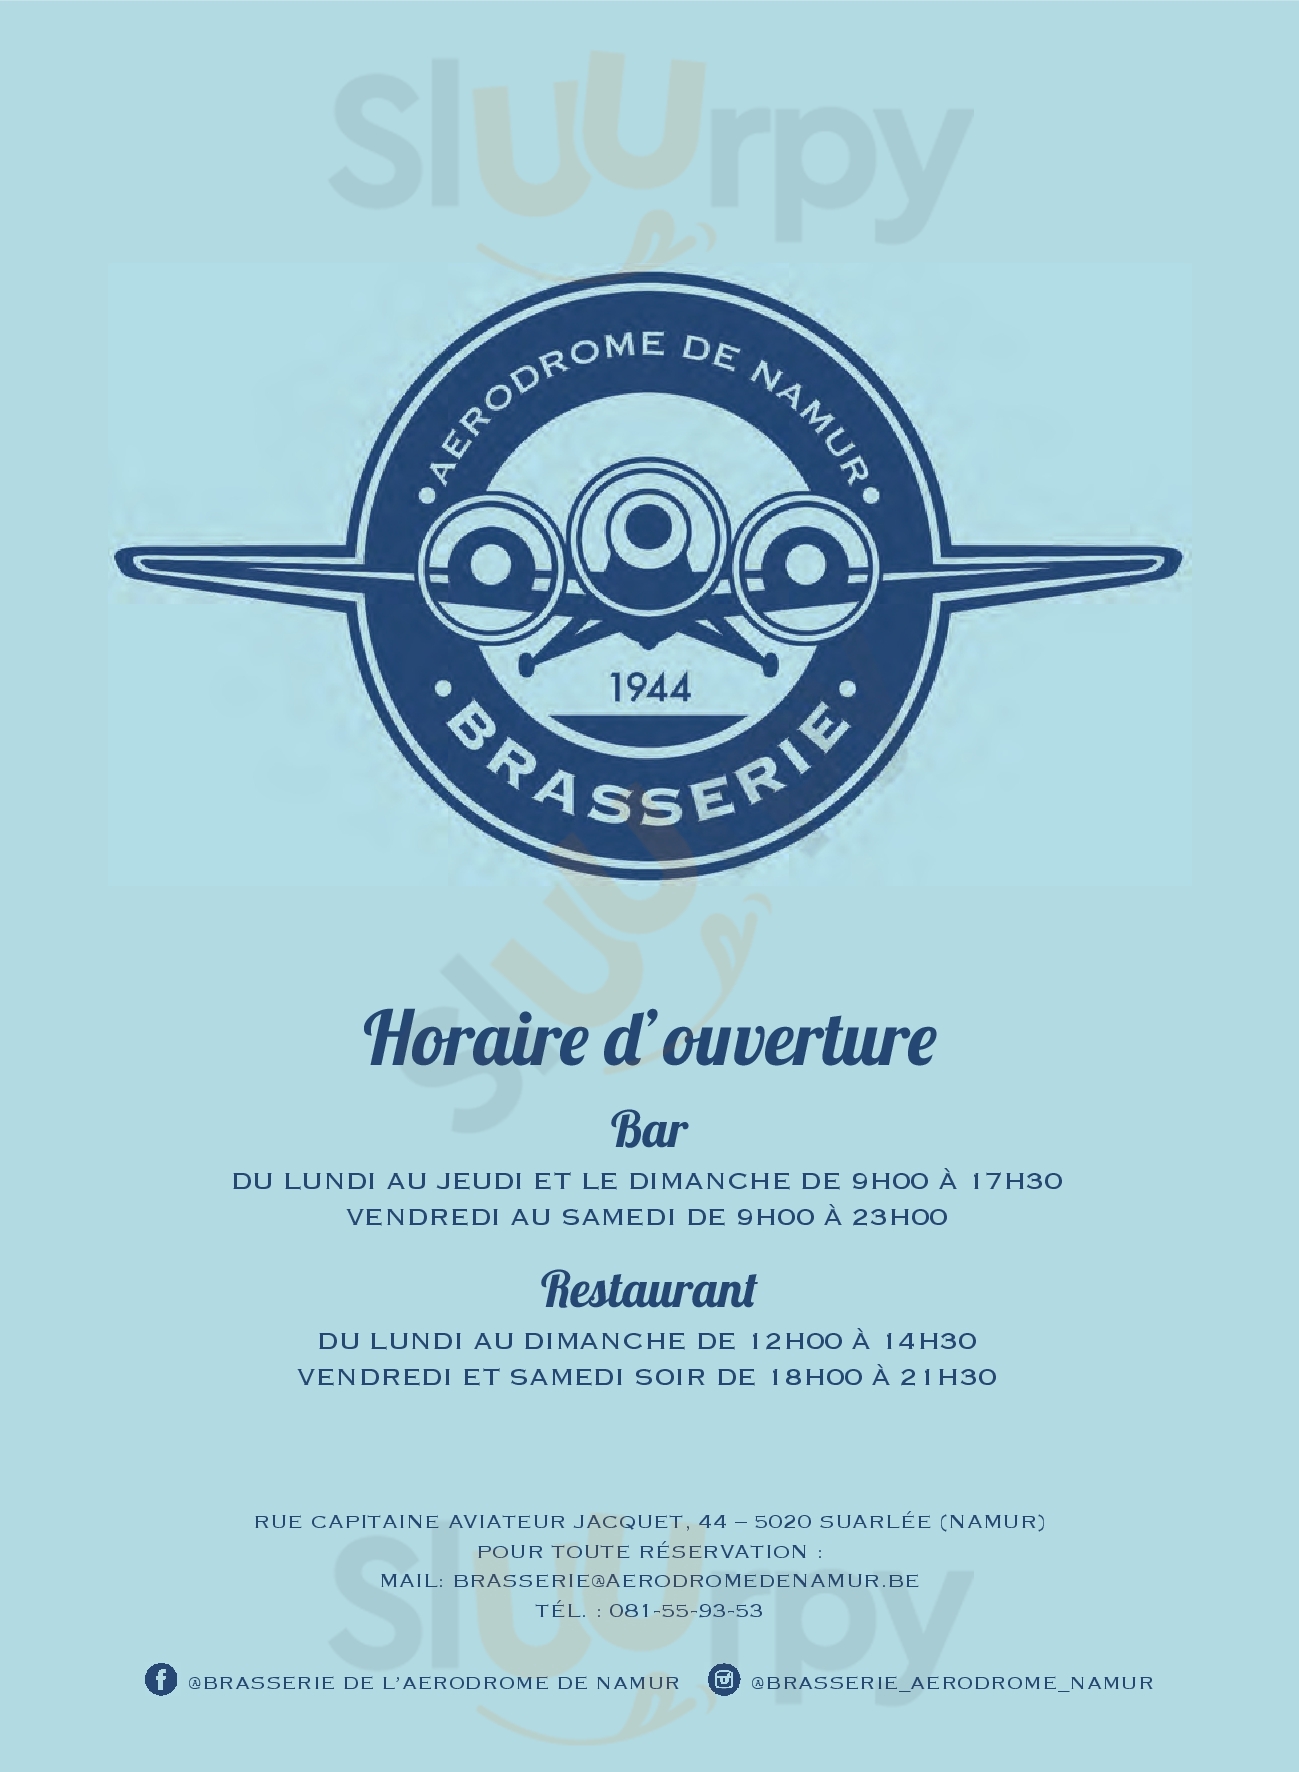 Brasserie De L'aerodrome De Namur Suarlee Menu - 1